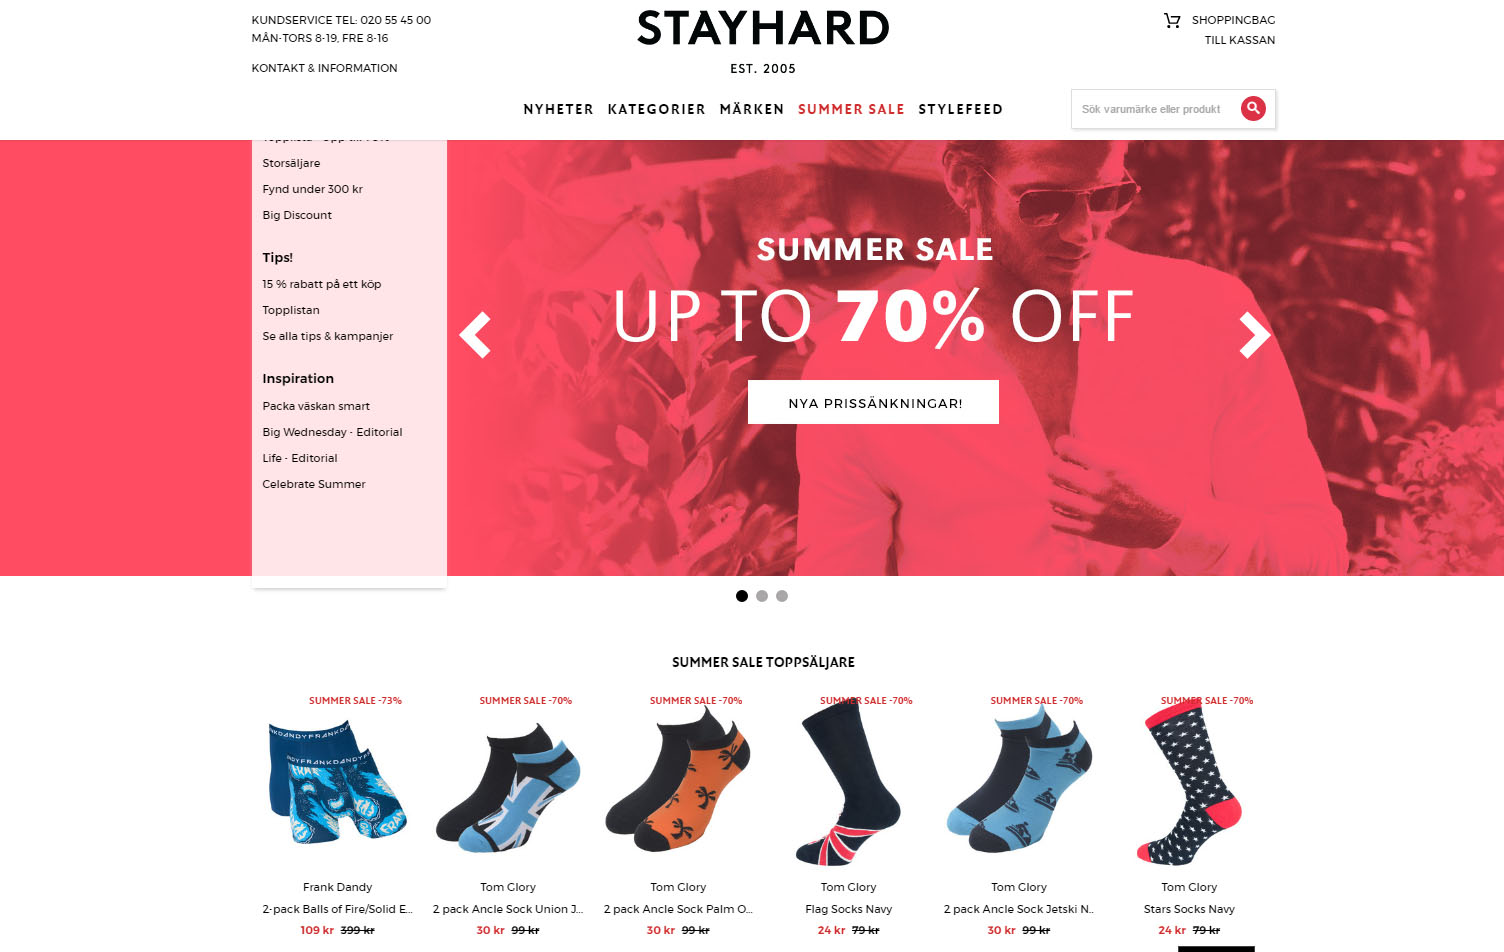 Landningssida för Stayhards kampanj